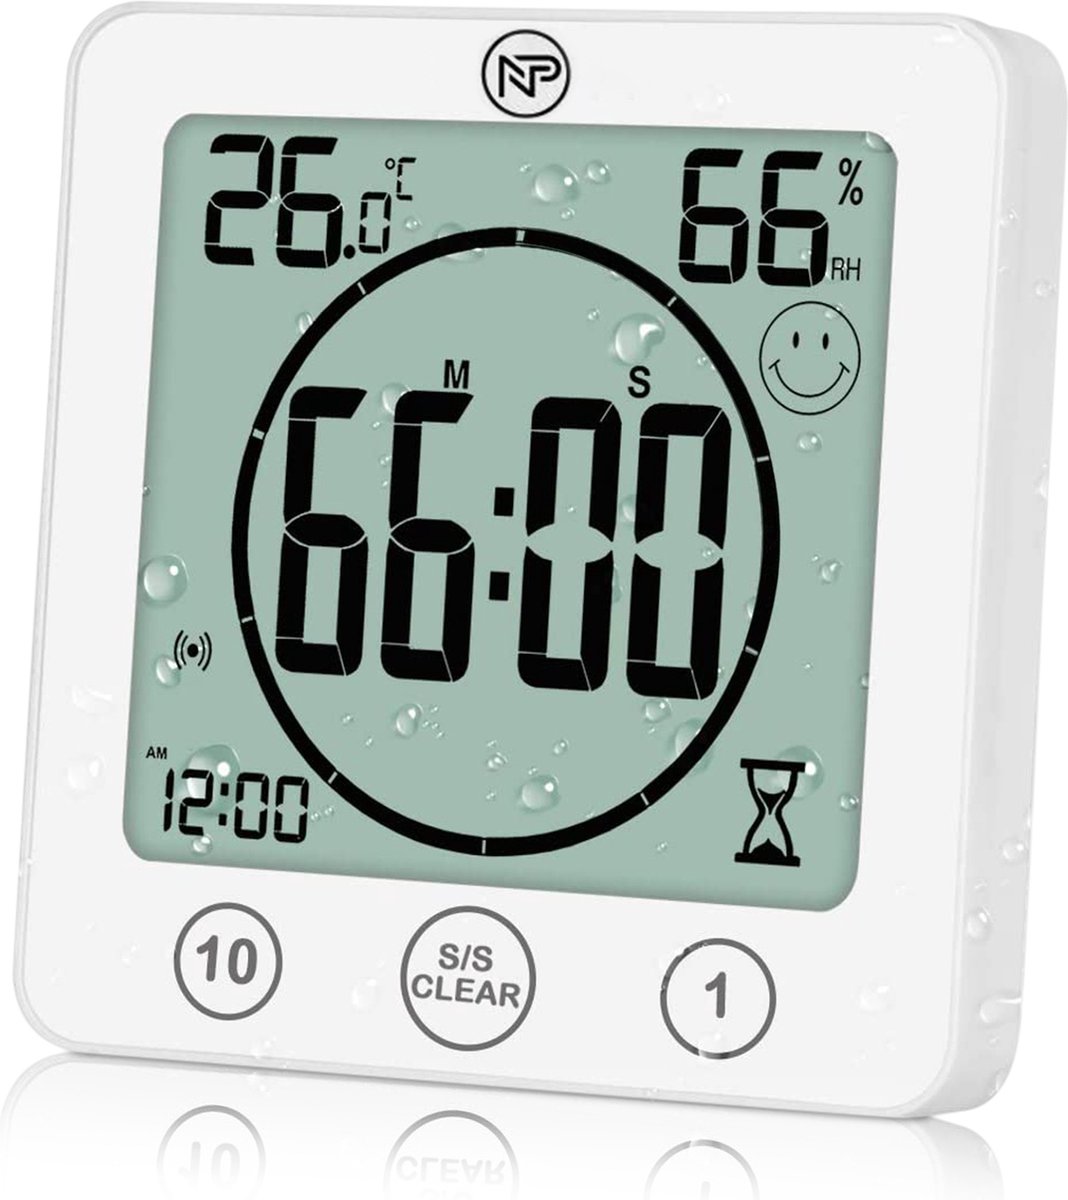 NP Goods - Douche Timer - Shower Timer - Badkamer Klok - Wekker Digitaal - Luchtvochtigheidsmeter - Hygrometer + Thermometer binnen - Wit